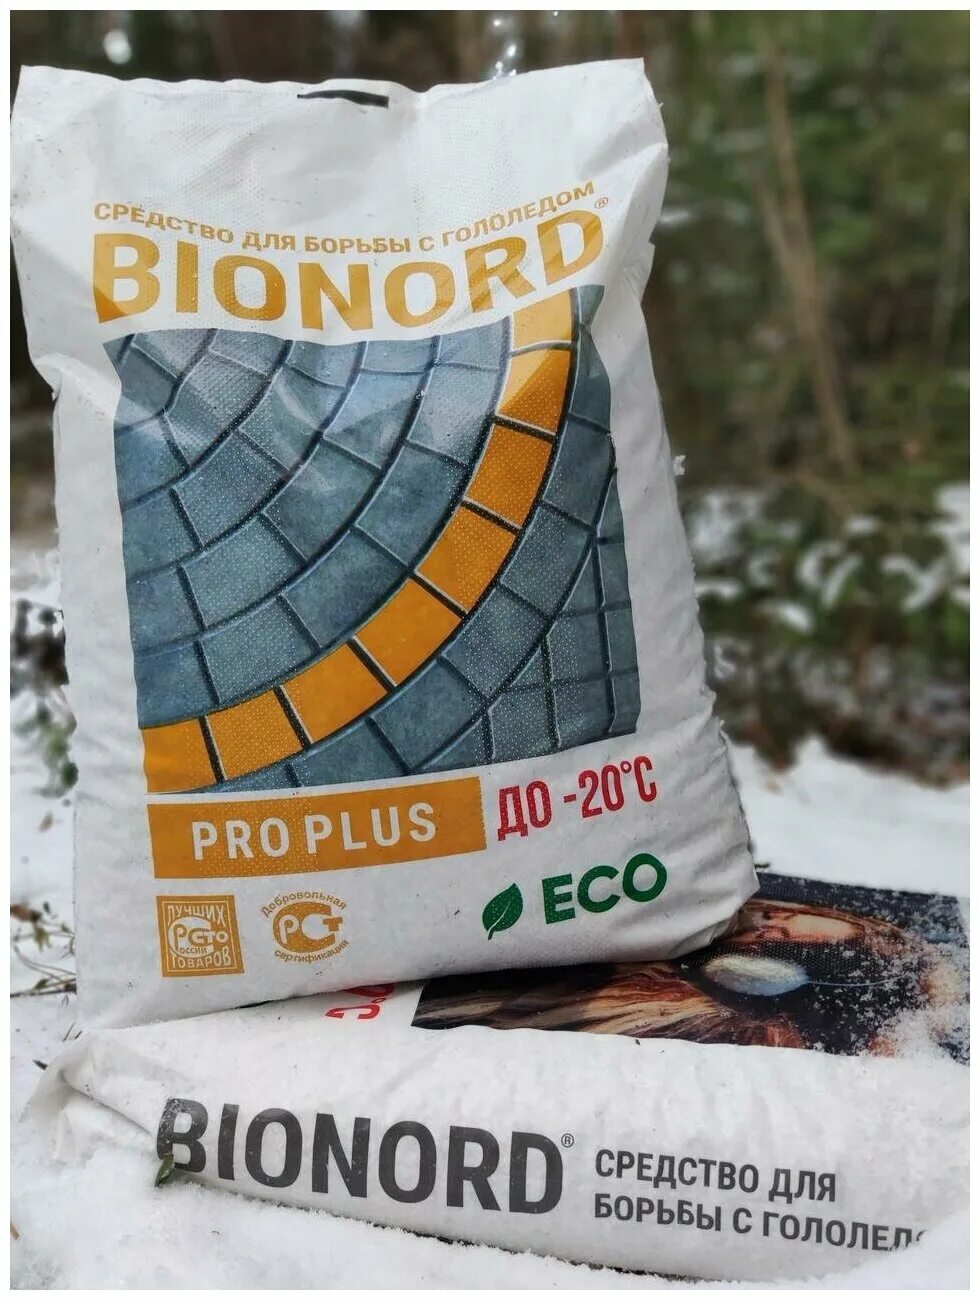 Реагент отзывы. Противогололедный реагент BIONORD (Бионорд) Pro Plus -20 23 кг мешок. Бионорд Pro Plus, противогололедный материал в грануле 23 кг. Бионорд Pro -20, противогололедный материал в грануле 23 кг. Реагент противогололедный BIONORD универсальный 23 кг.